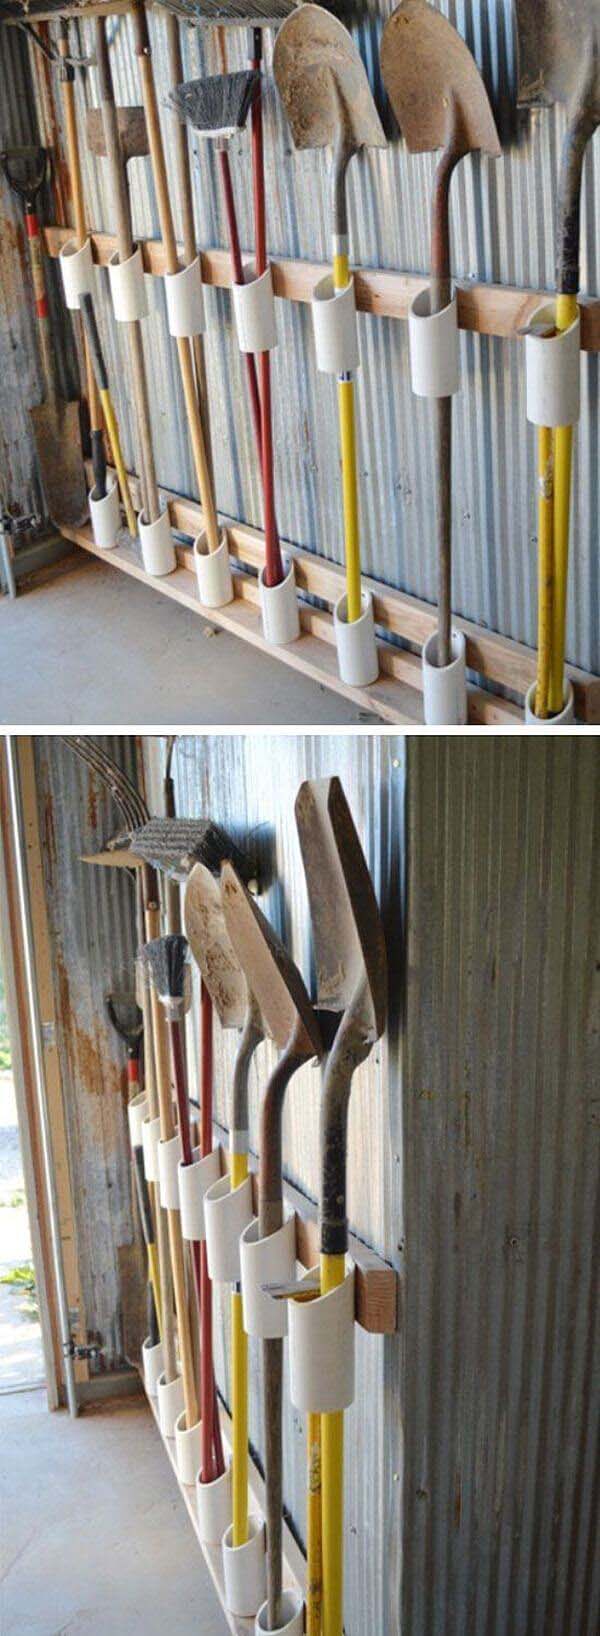 Rakes and Shovels Storage #garage #organization #declutter #decorhomeideas